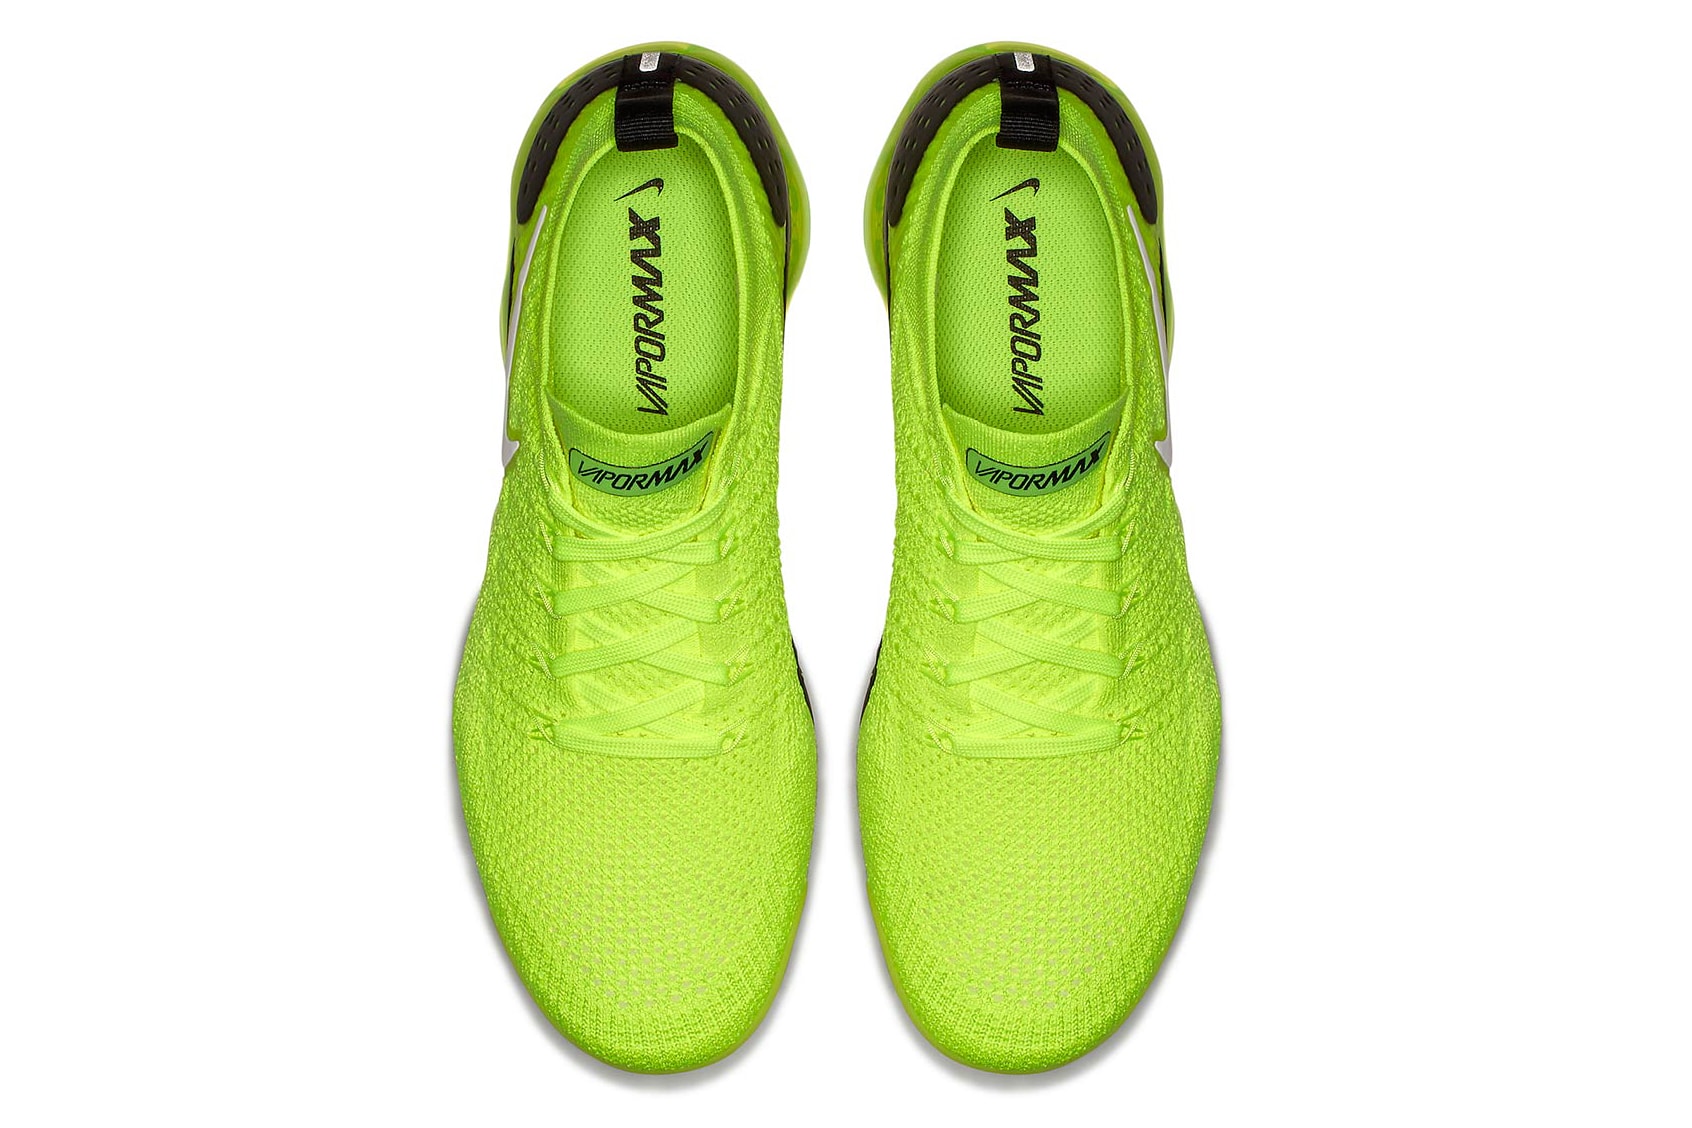 Nike Air VaporMax 2 Volt Release Date black sneakers footwear